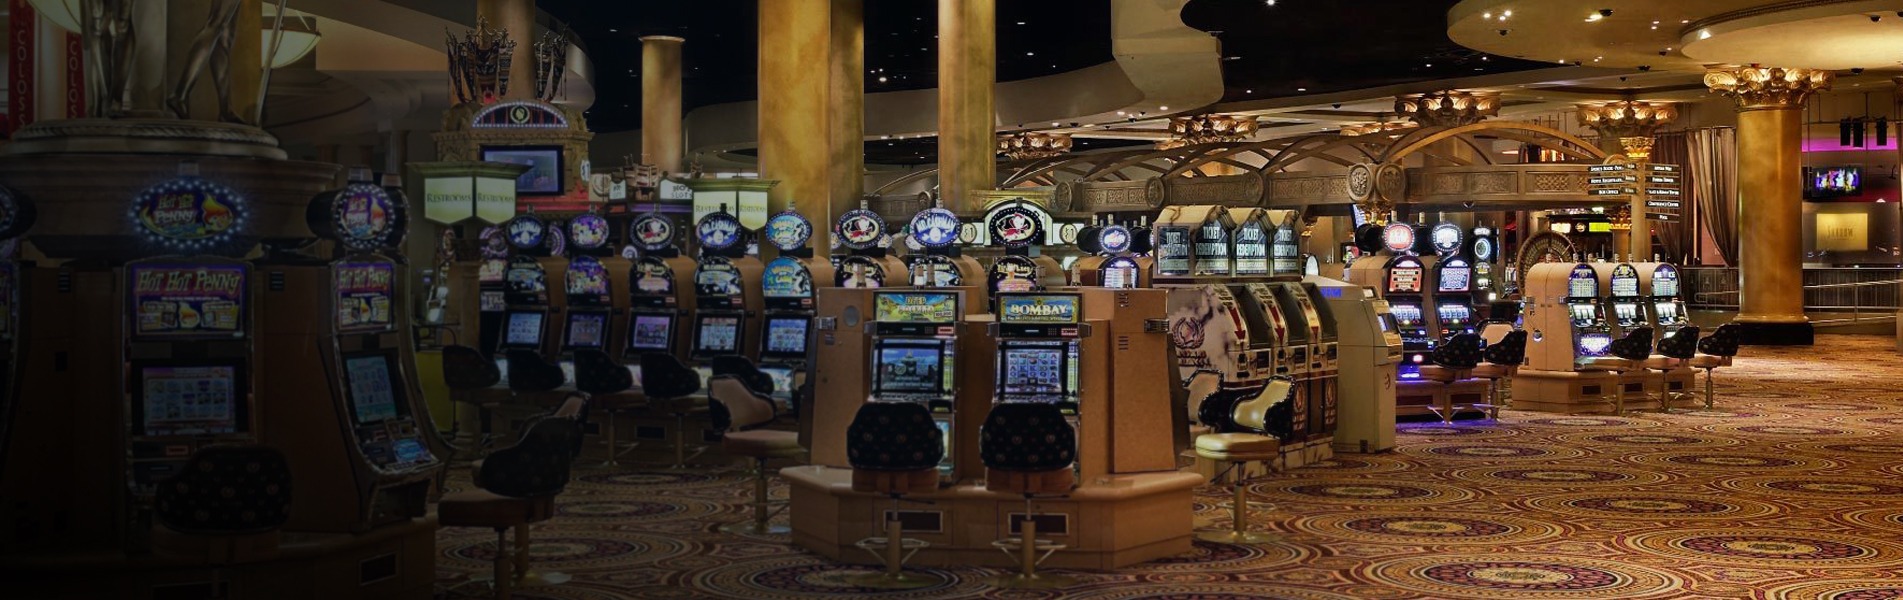 Caesars Palace Casino Las Vegas 2